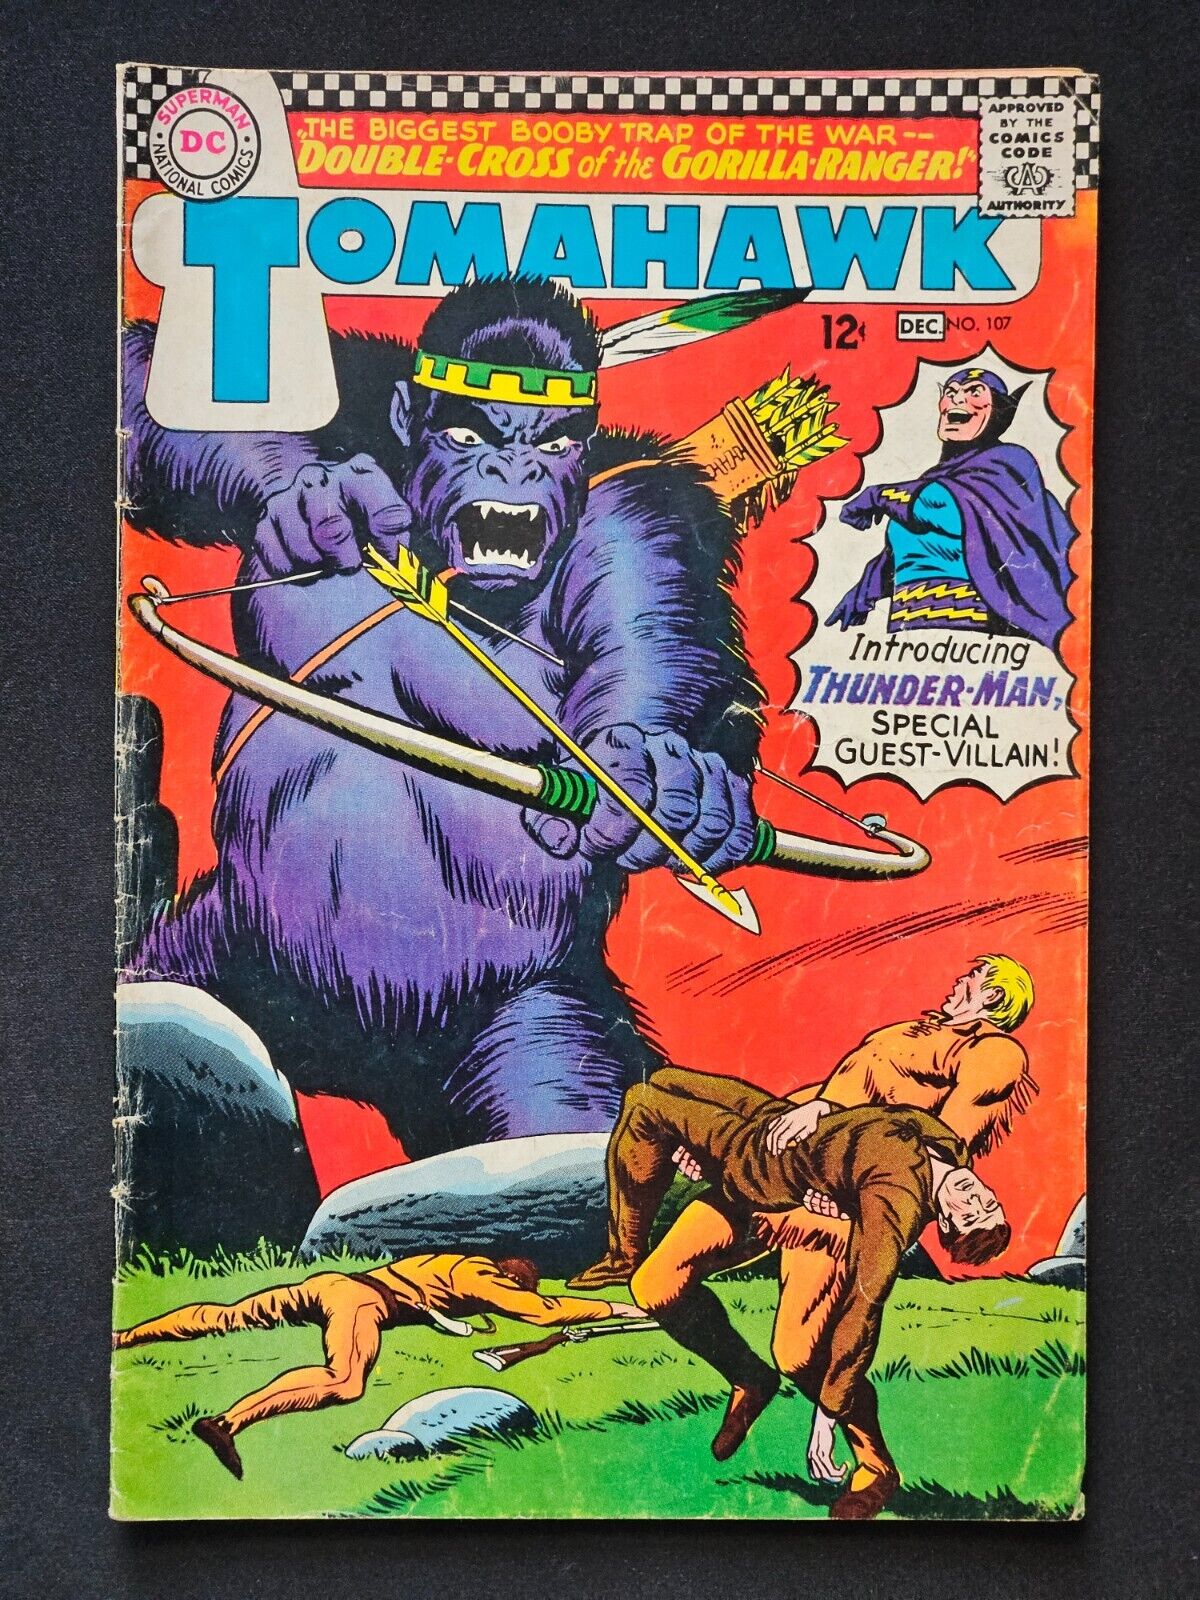 TOMAHAWK # 107 -1ST APP OF THUNDER-MAN-DOUBLE CROSS OF GORILLA-RANGER